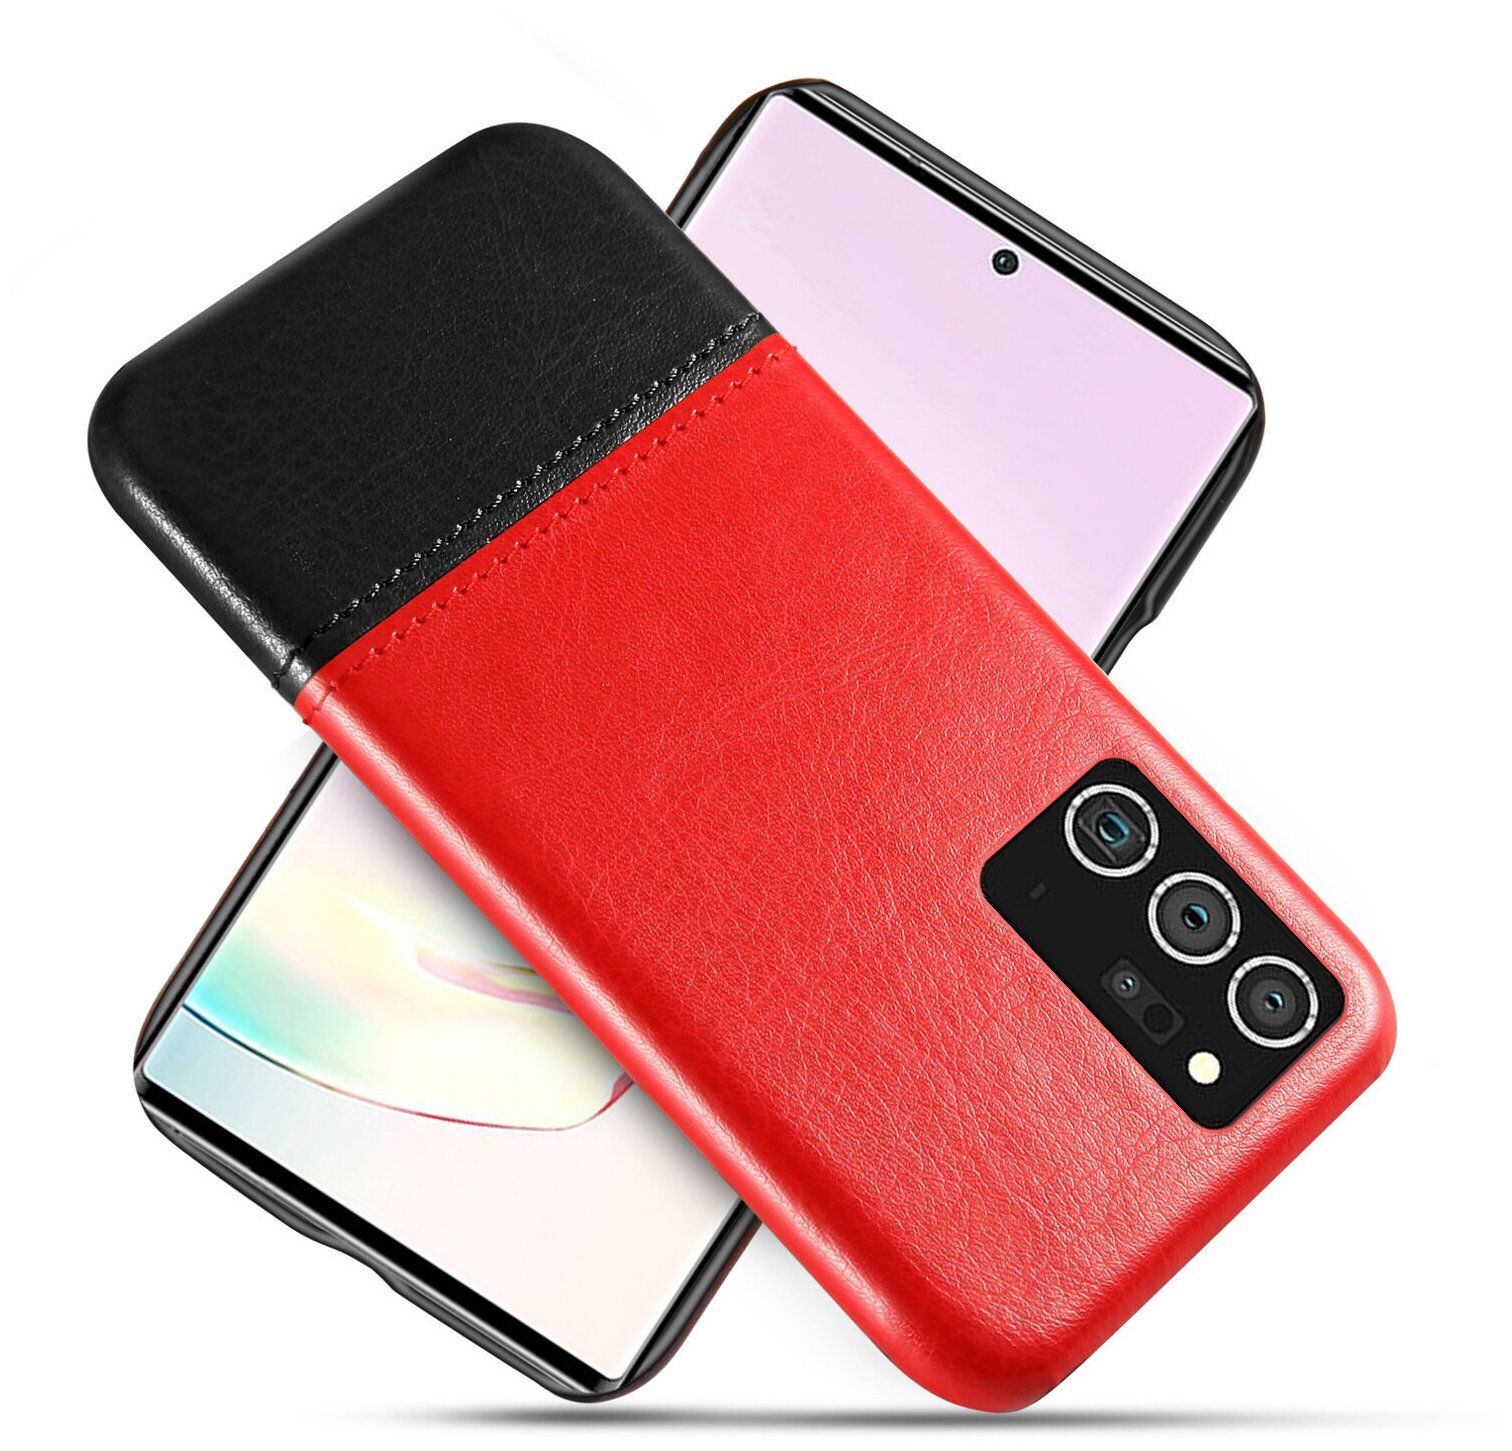 Чехол-накладка Mypads для Samsung Galaxy Note 20 Ultra (SM-N985F) обтянутый кожей двухцветный с элегантной прошивкой красный-черный